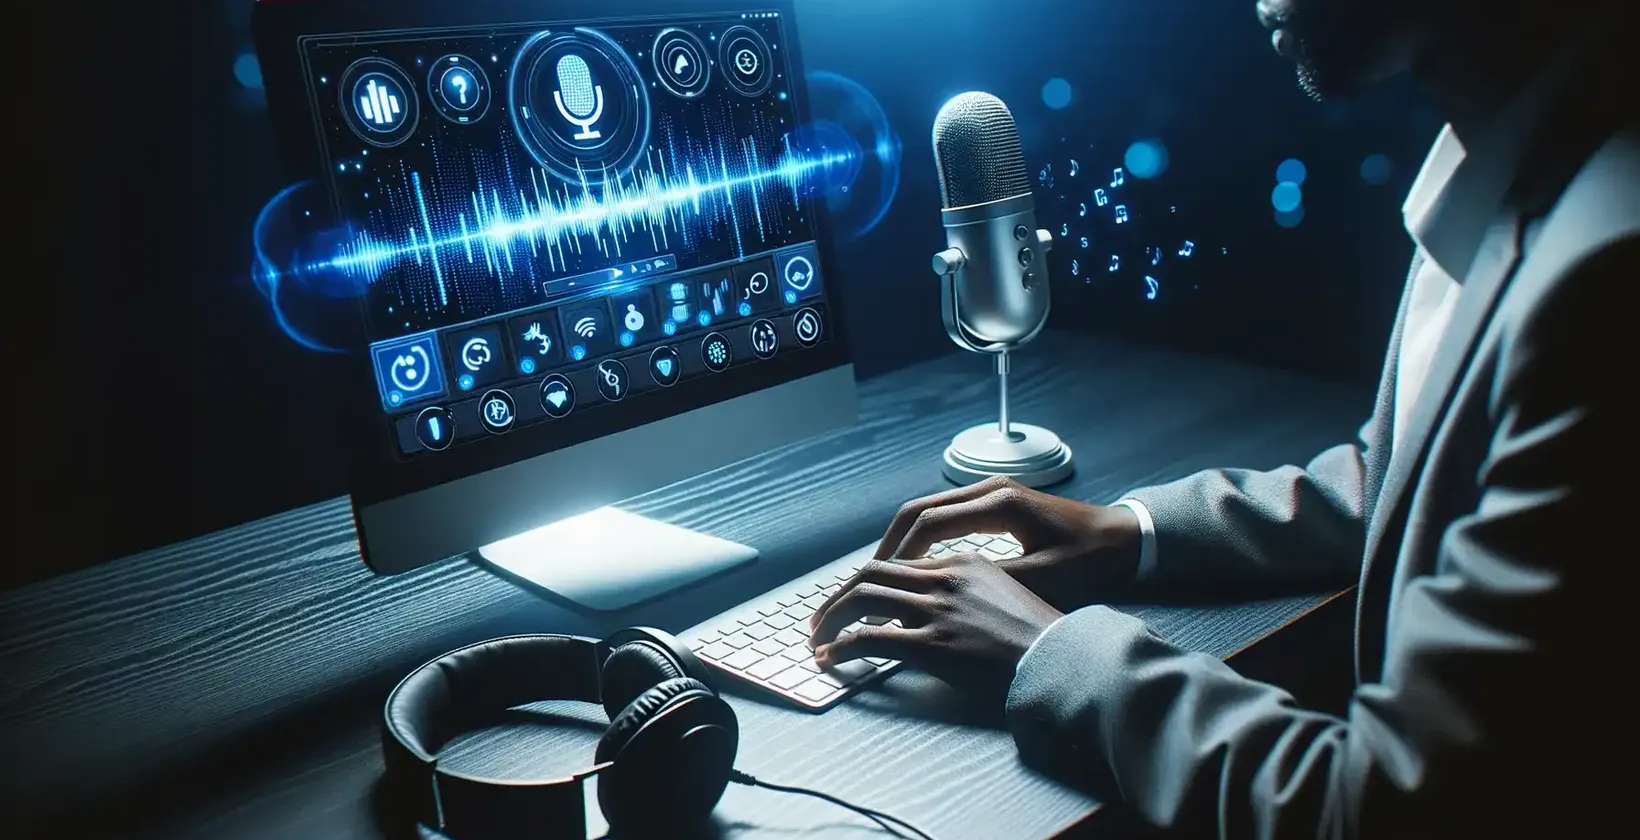 Homem usando uma interface de áudio sofisticada em um computador, enfatizando a transcrição do formato M4V.